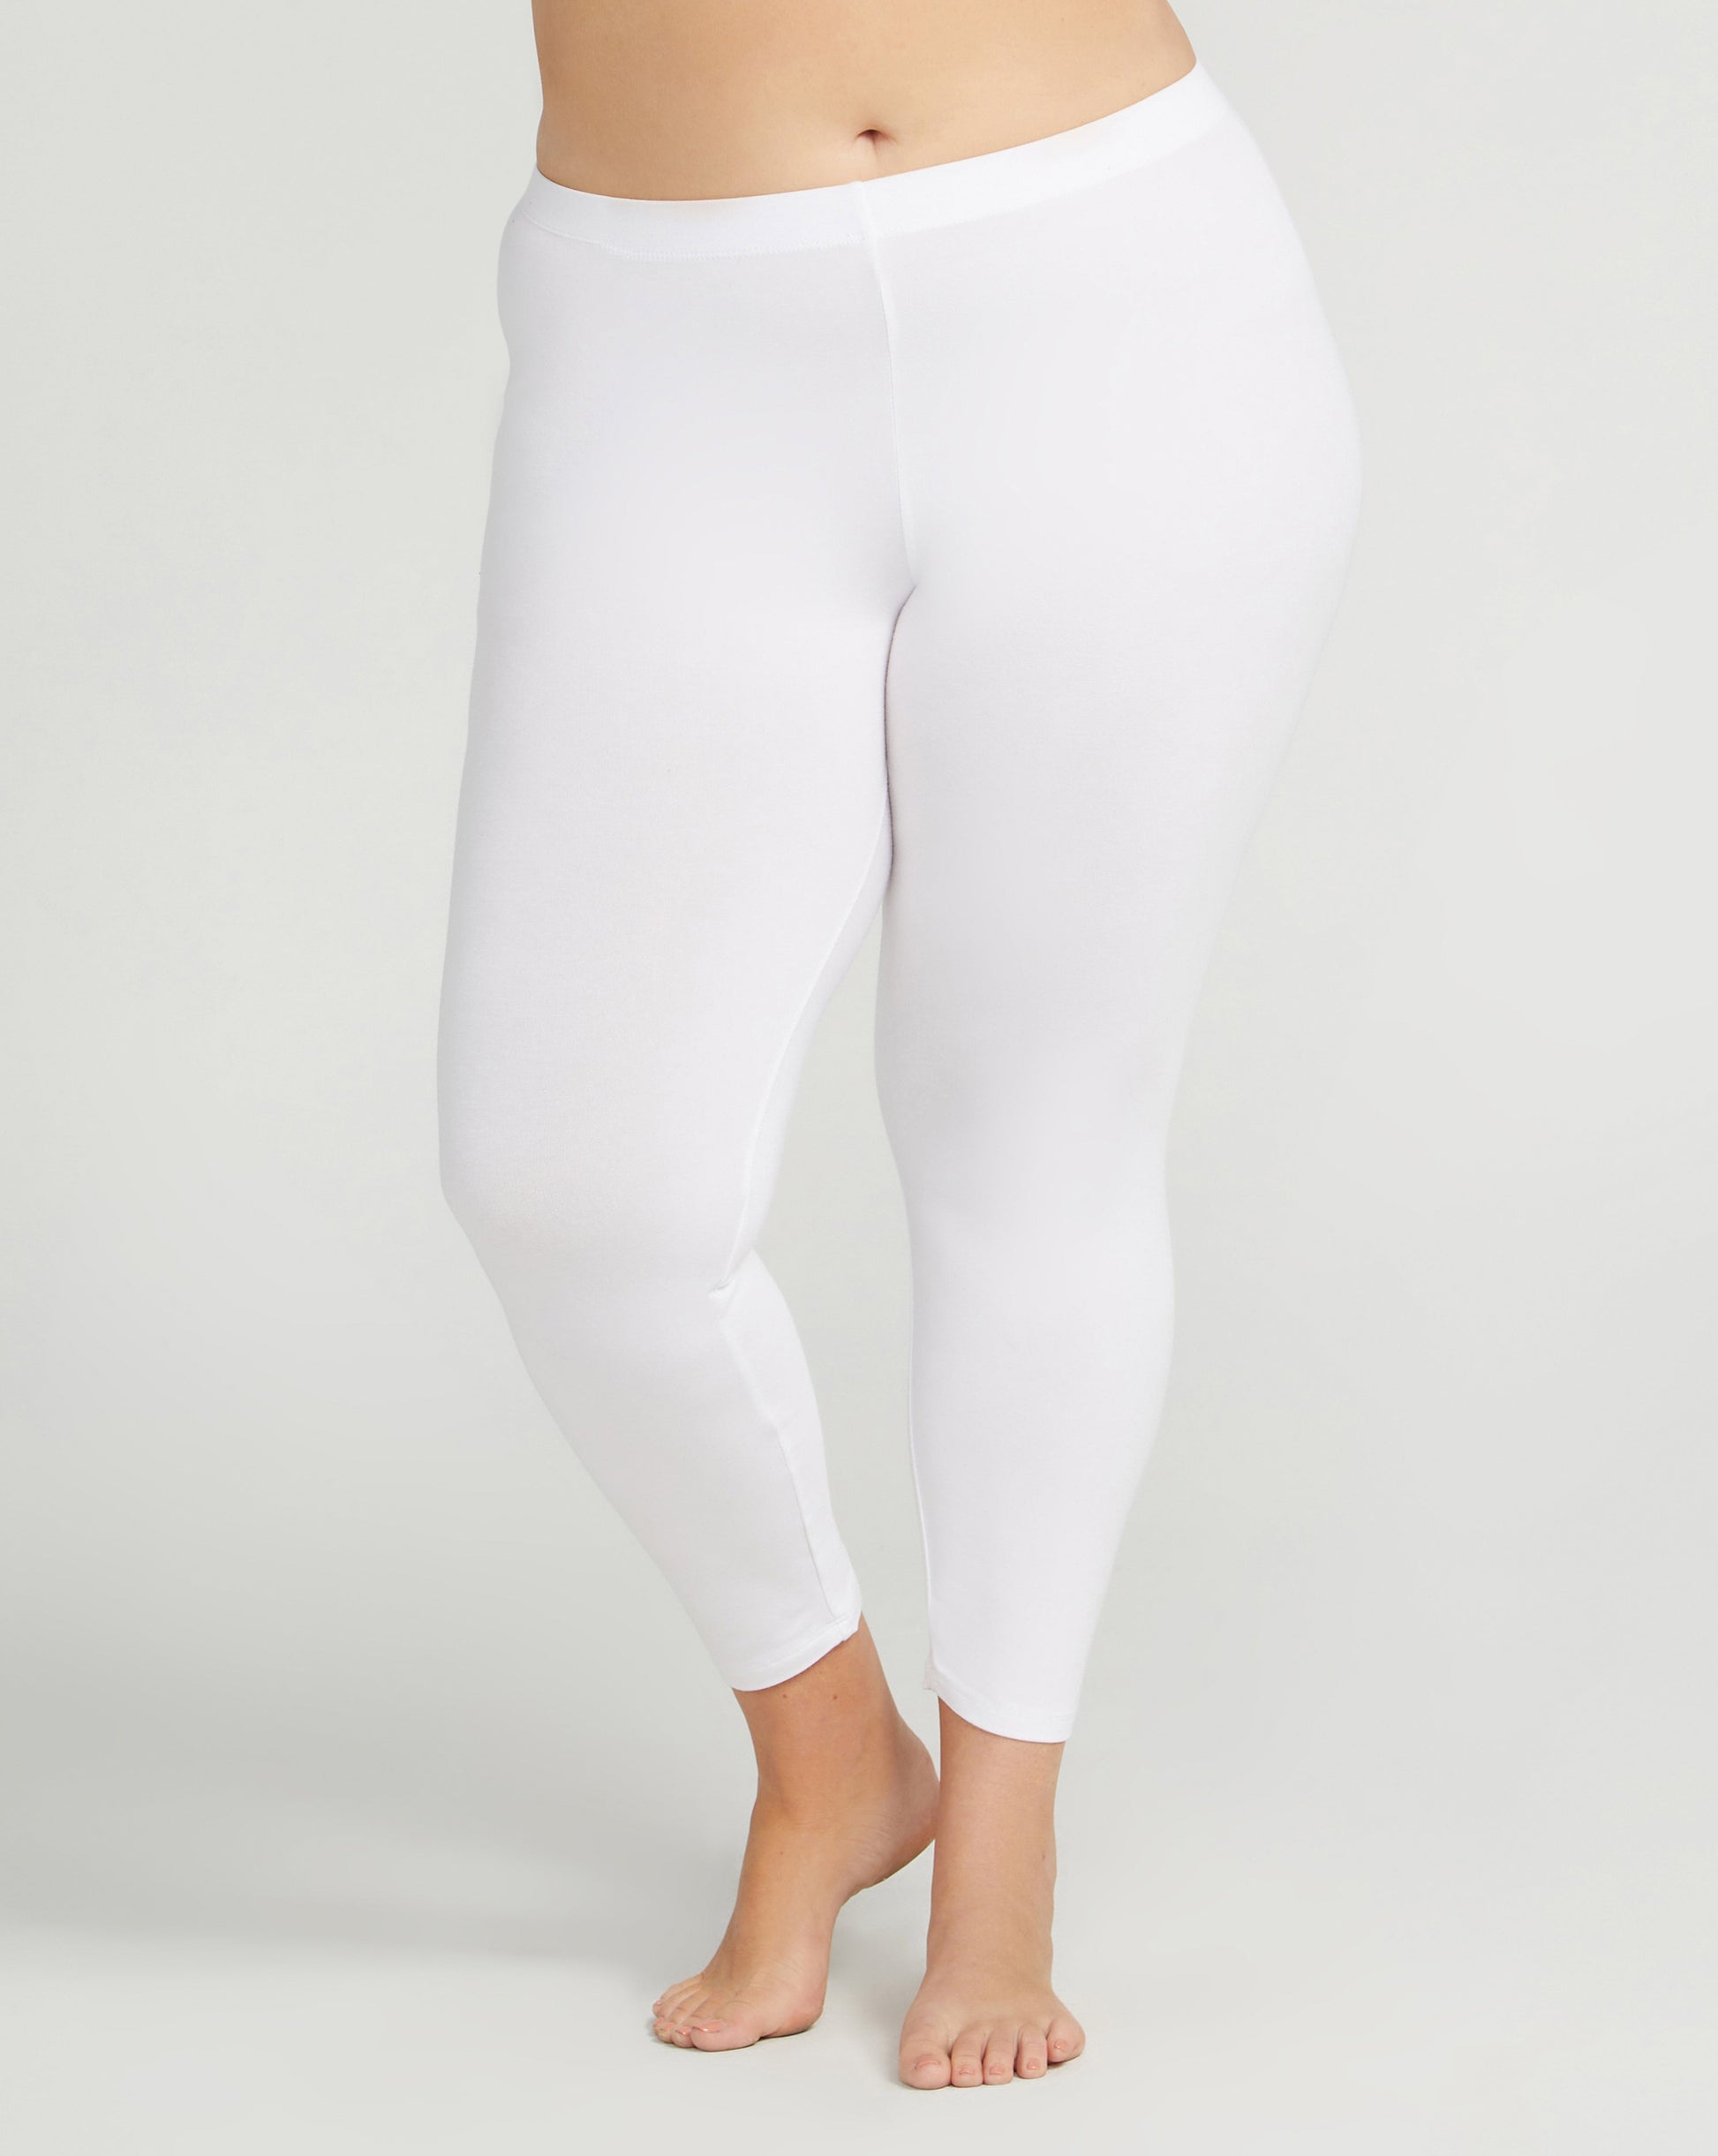 Buy White Leggings for Women by DeMoza Online